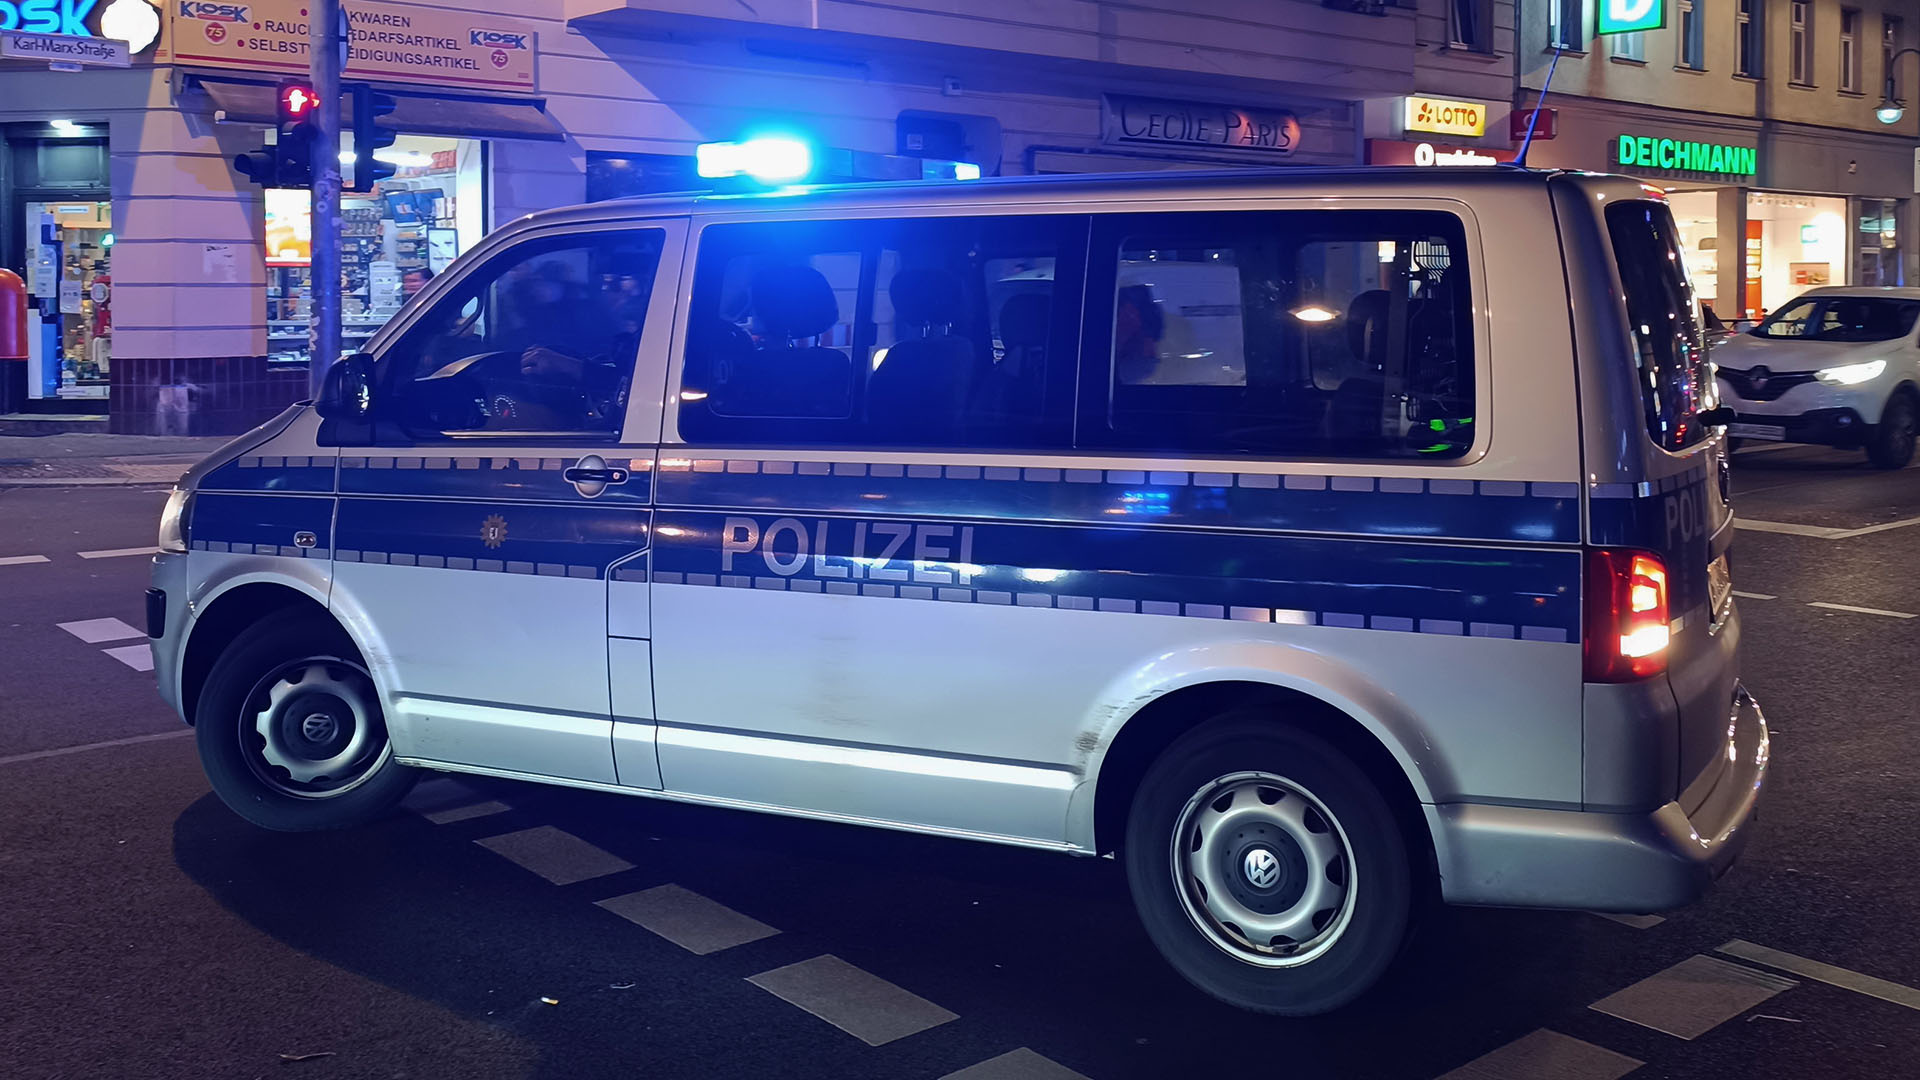 Symbolbild: Polizeifahreug auf der Straße in Berlin. (Quelle: dpa/Vorwerk)